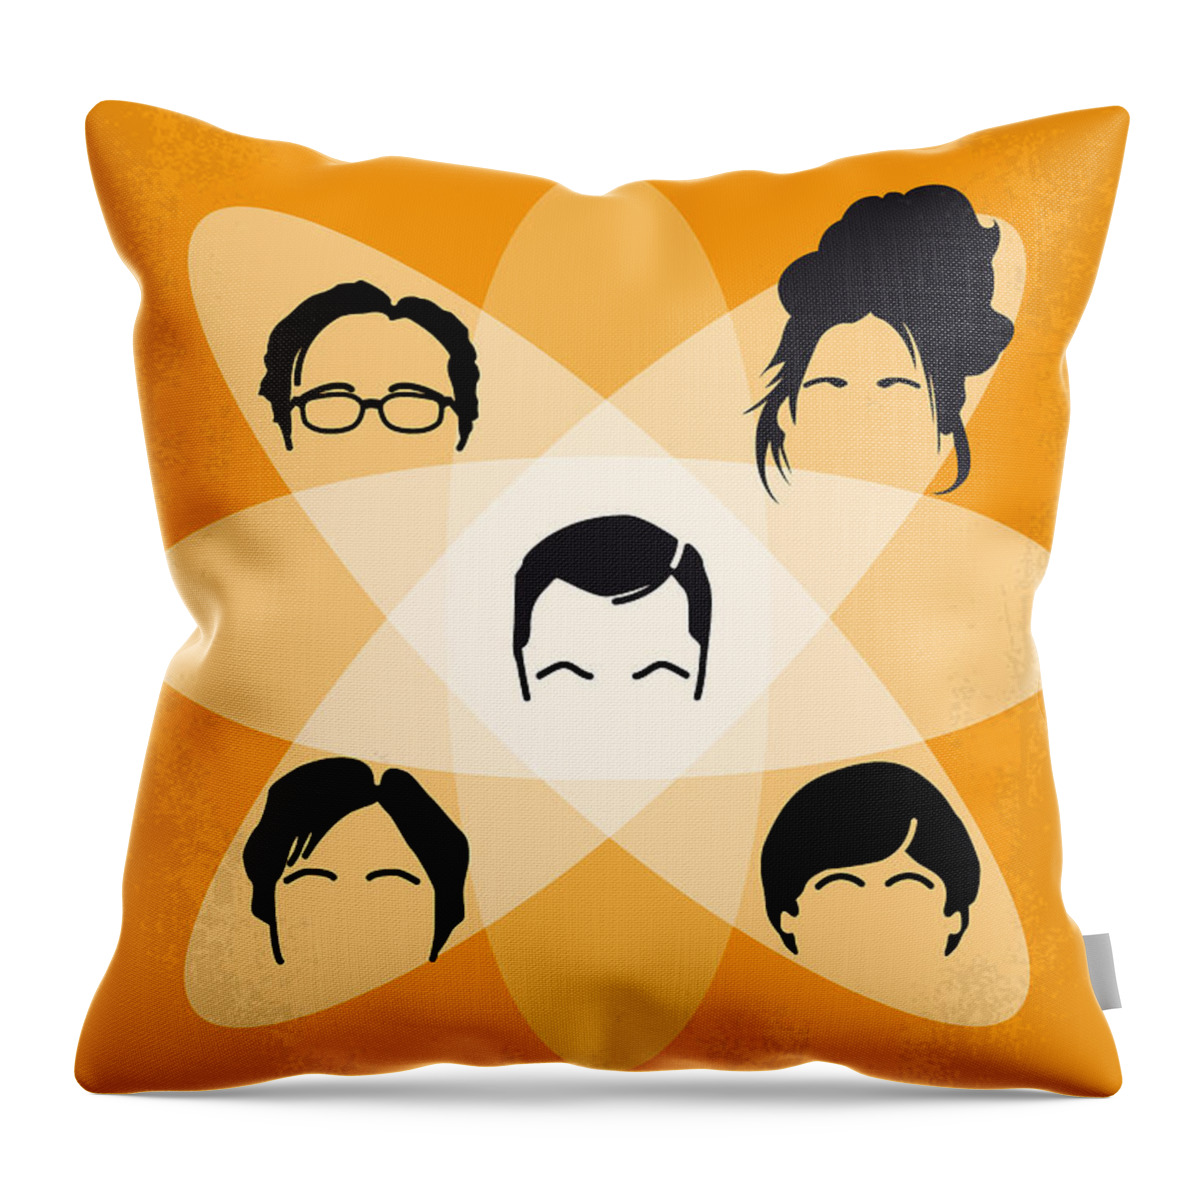 The Big Bang Theory Throw Pillow featuring the digital art No196 My The Big Bang Theory minimal poster by Chungkong Art